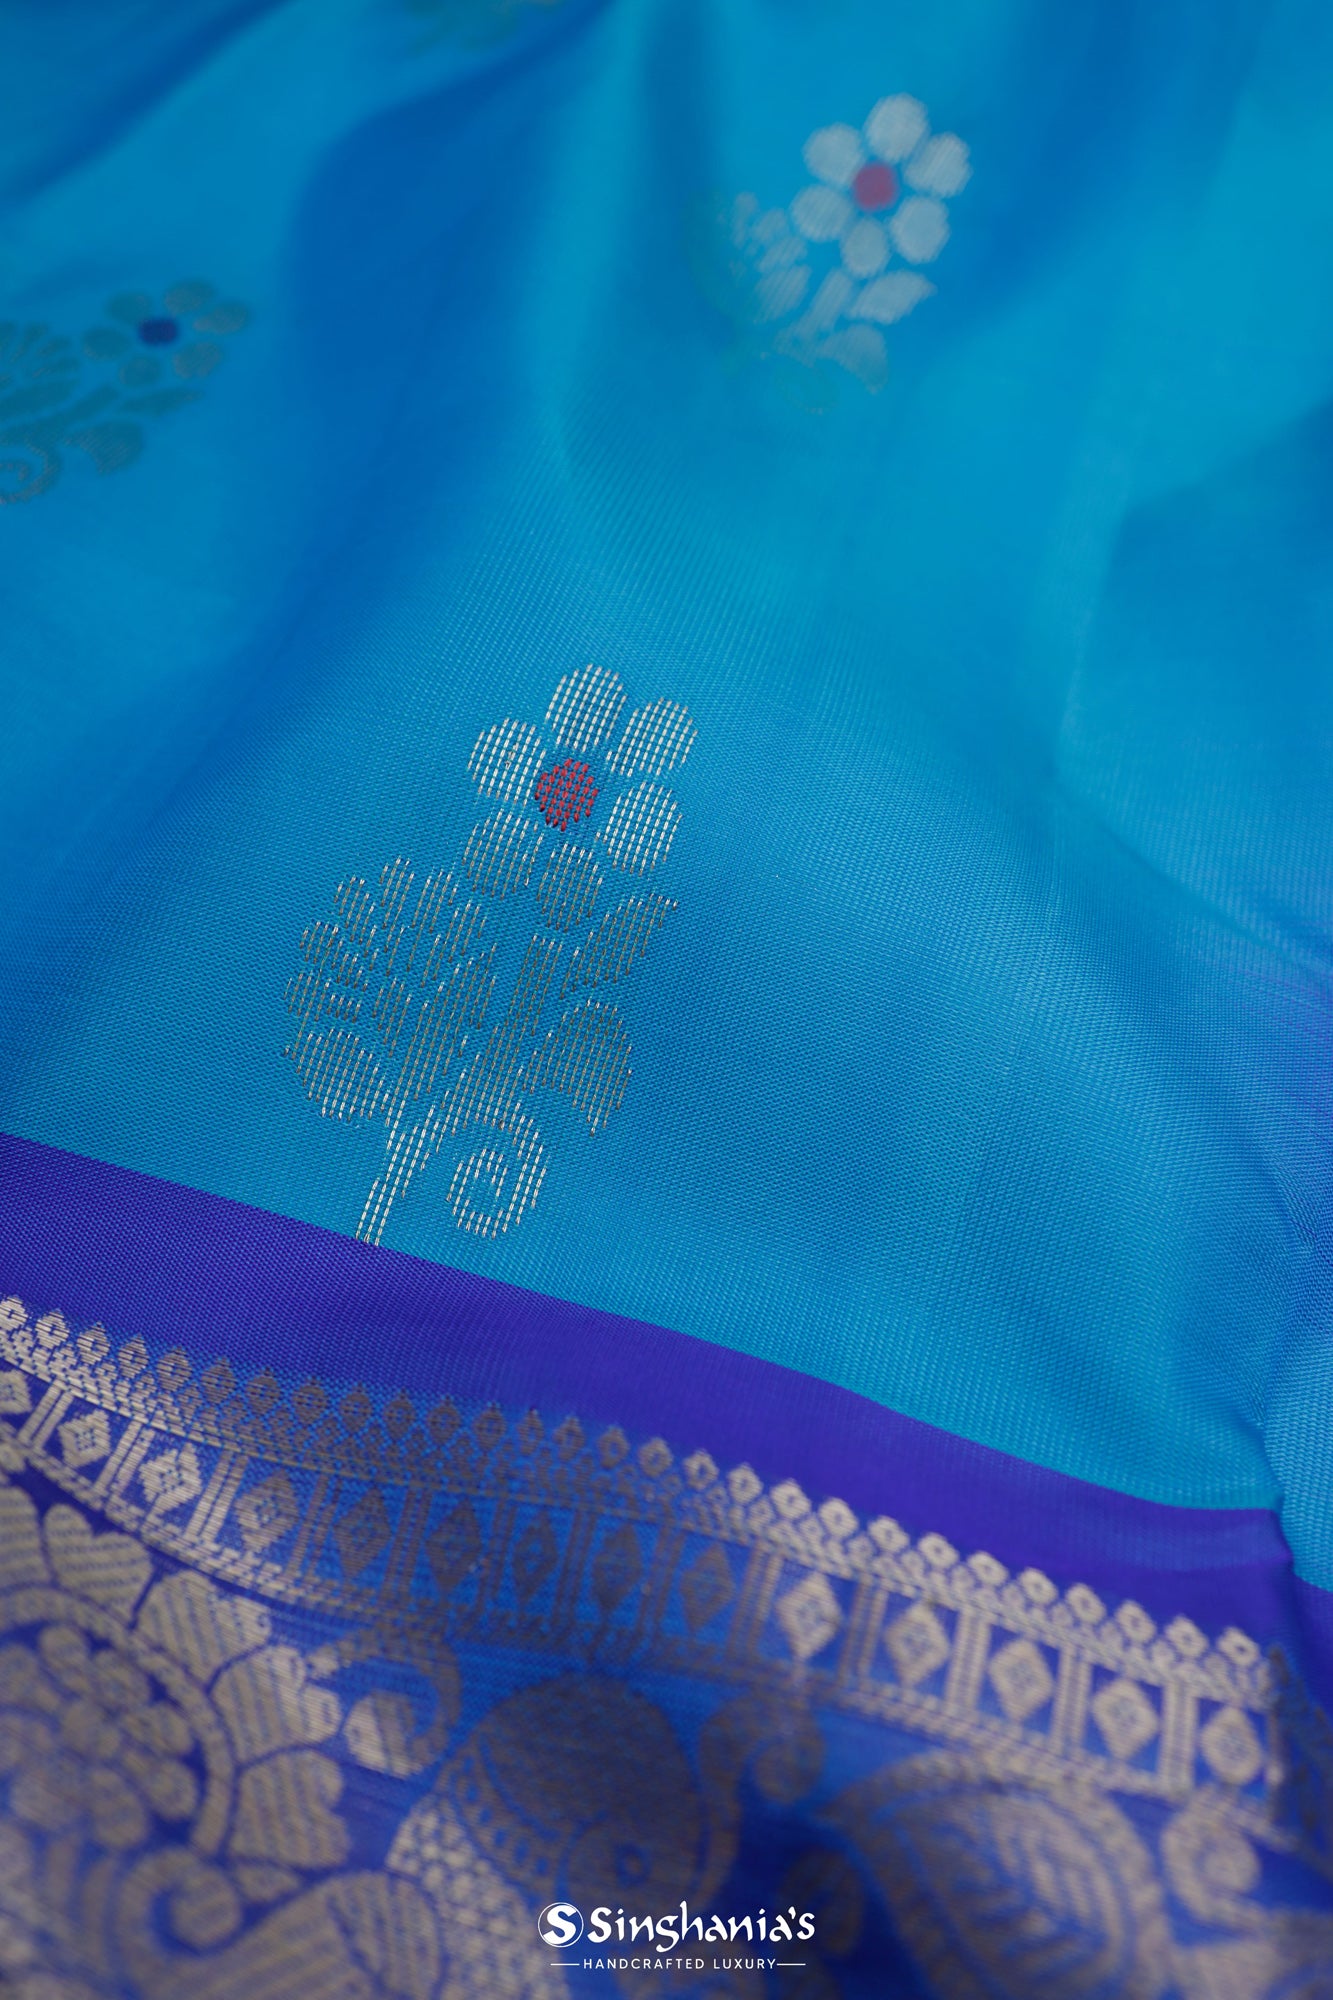 Chlorine Blue Kanjivaram Silk Saree With Floral Buttas Weaving